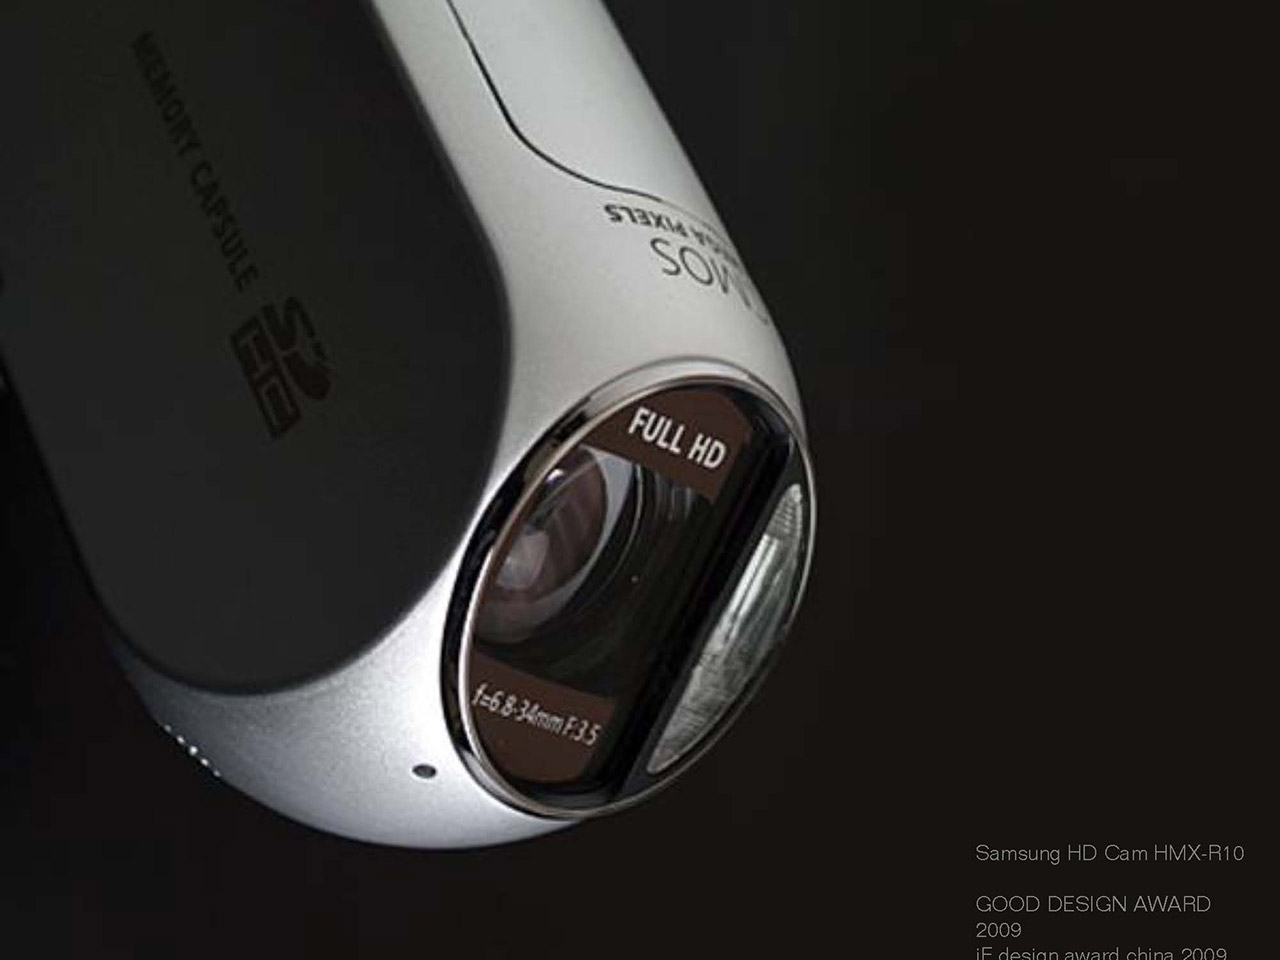 Samsung HD Cam HMX-R10